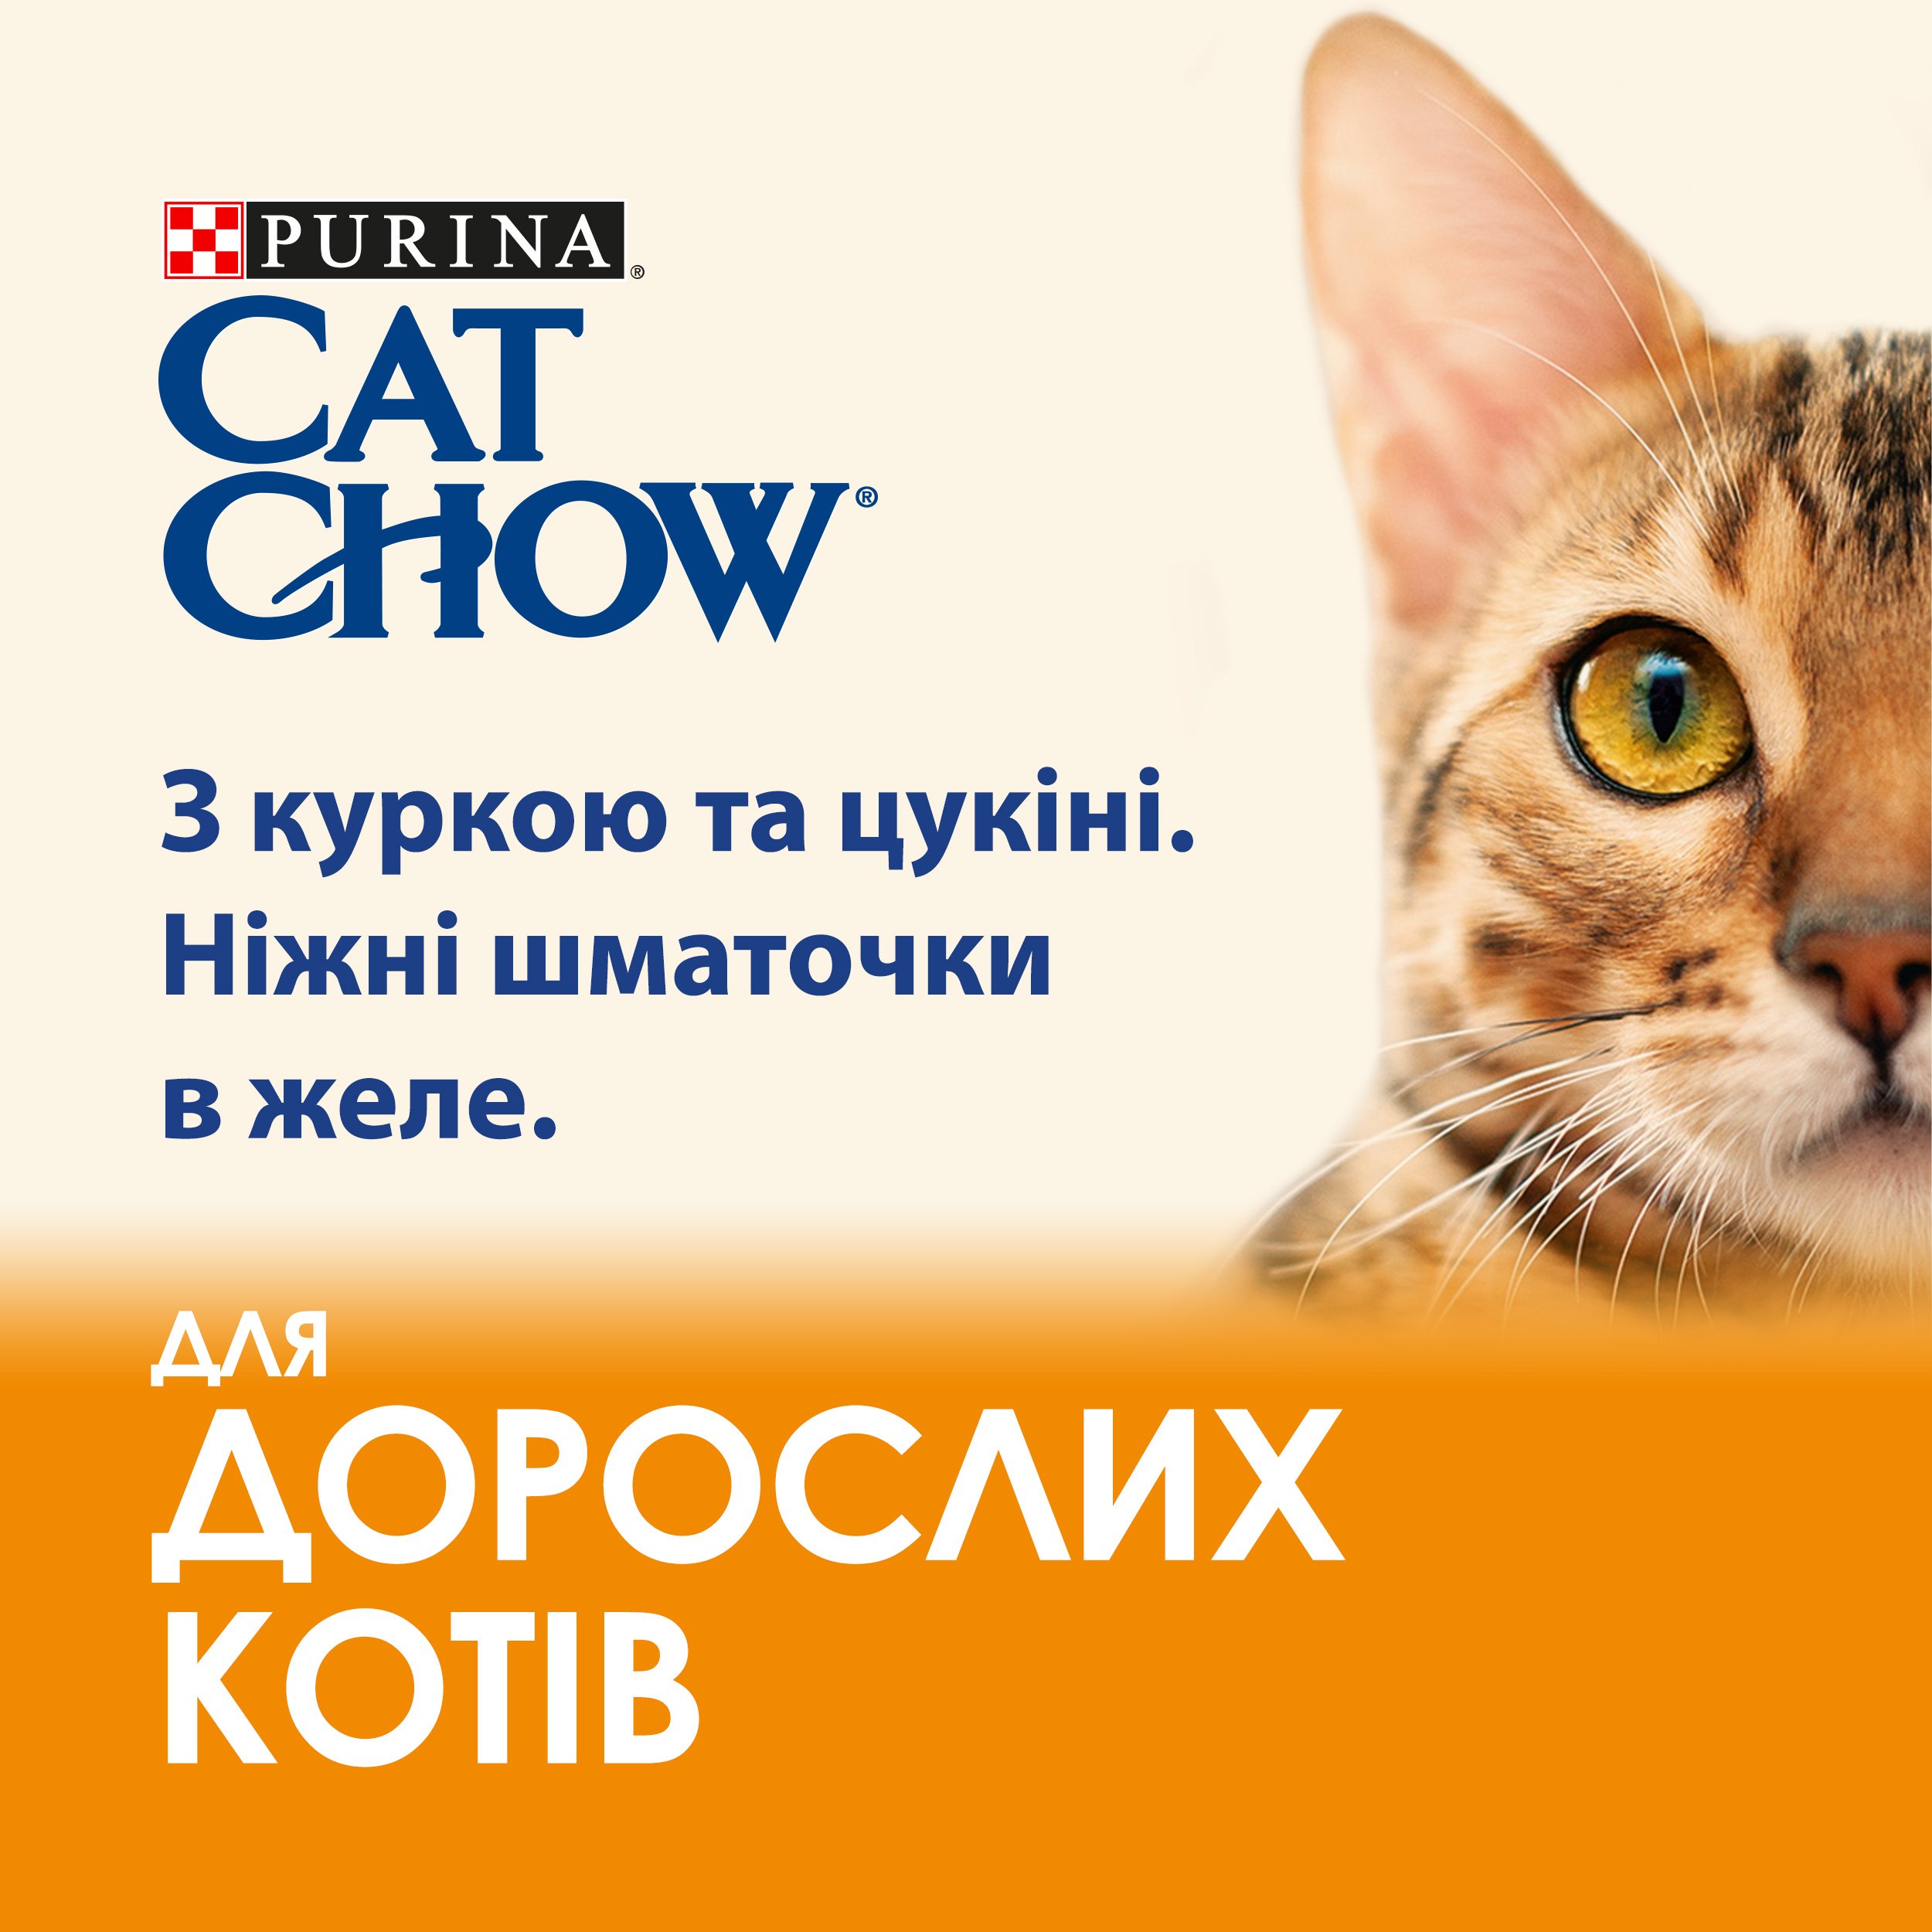 Вологий корм для котів Cat Chow Adult, ніжні шматочки в желе, з куркою та цукіні, 85 г - фото 4